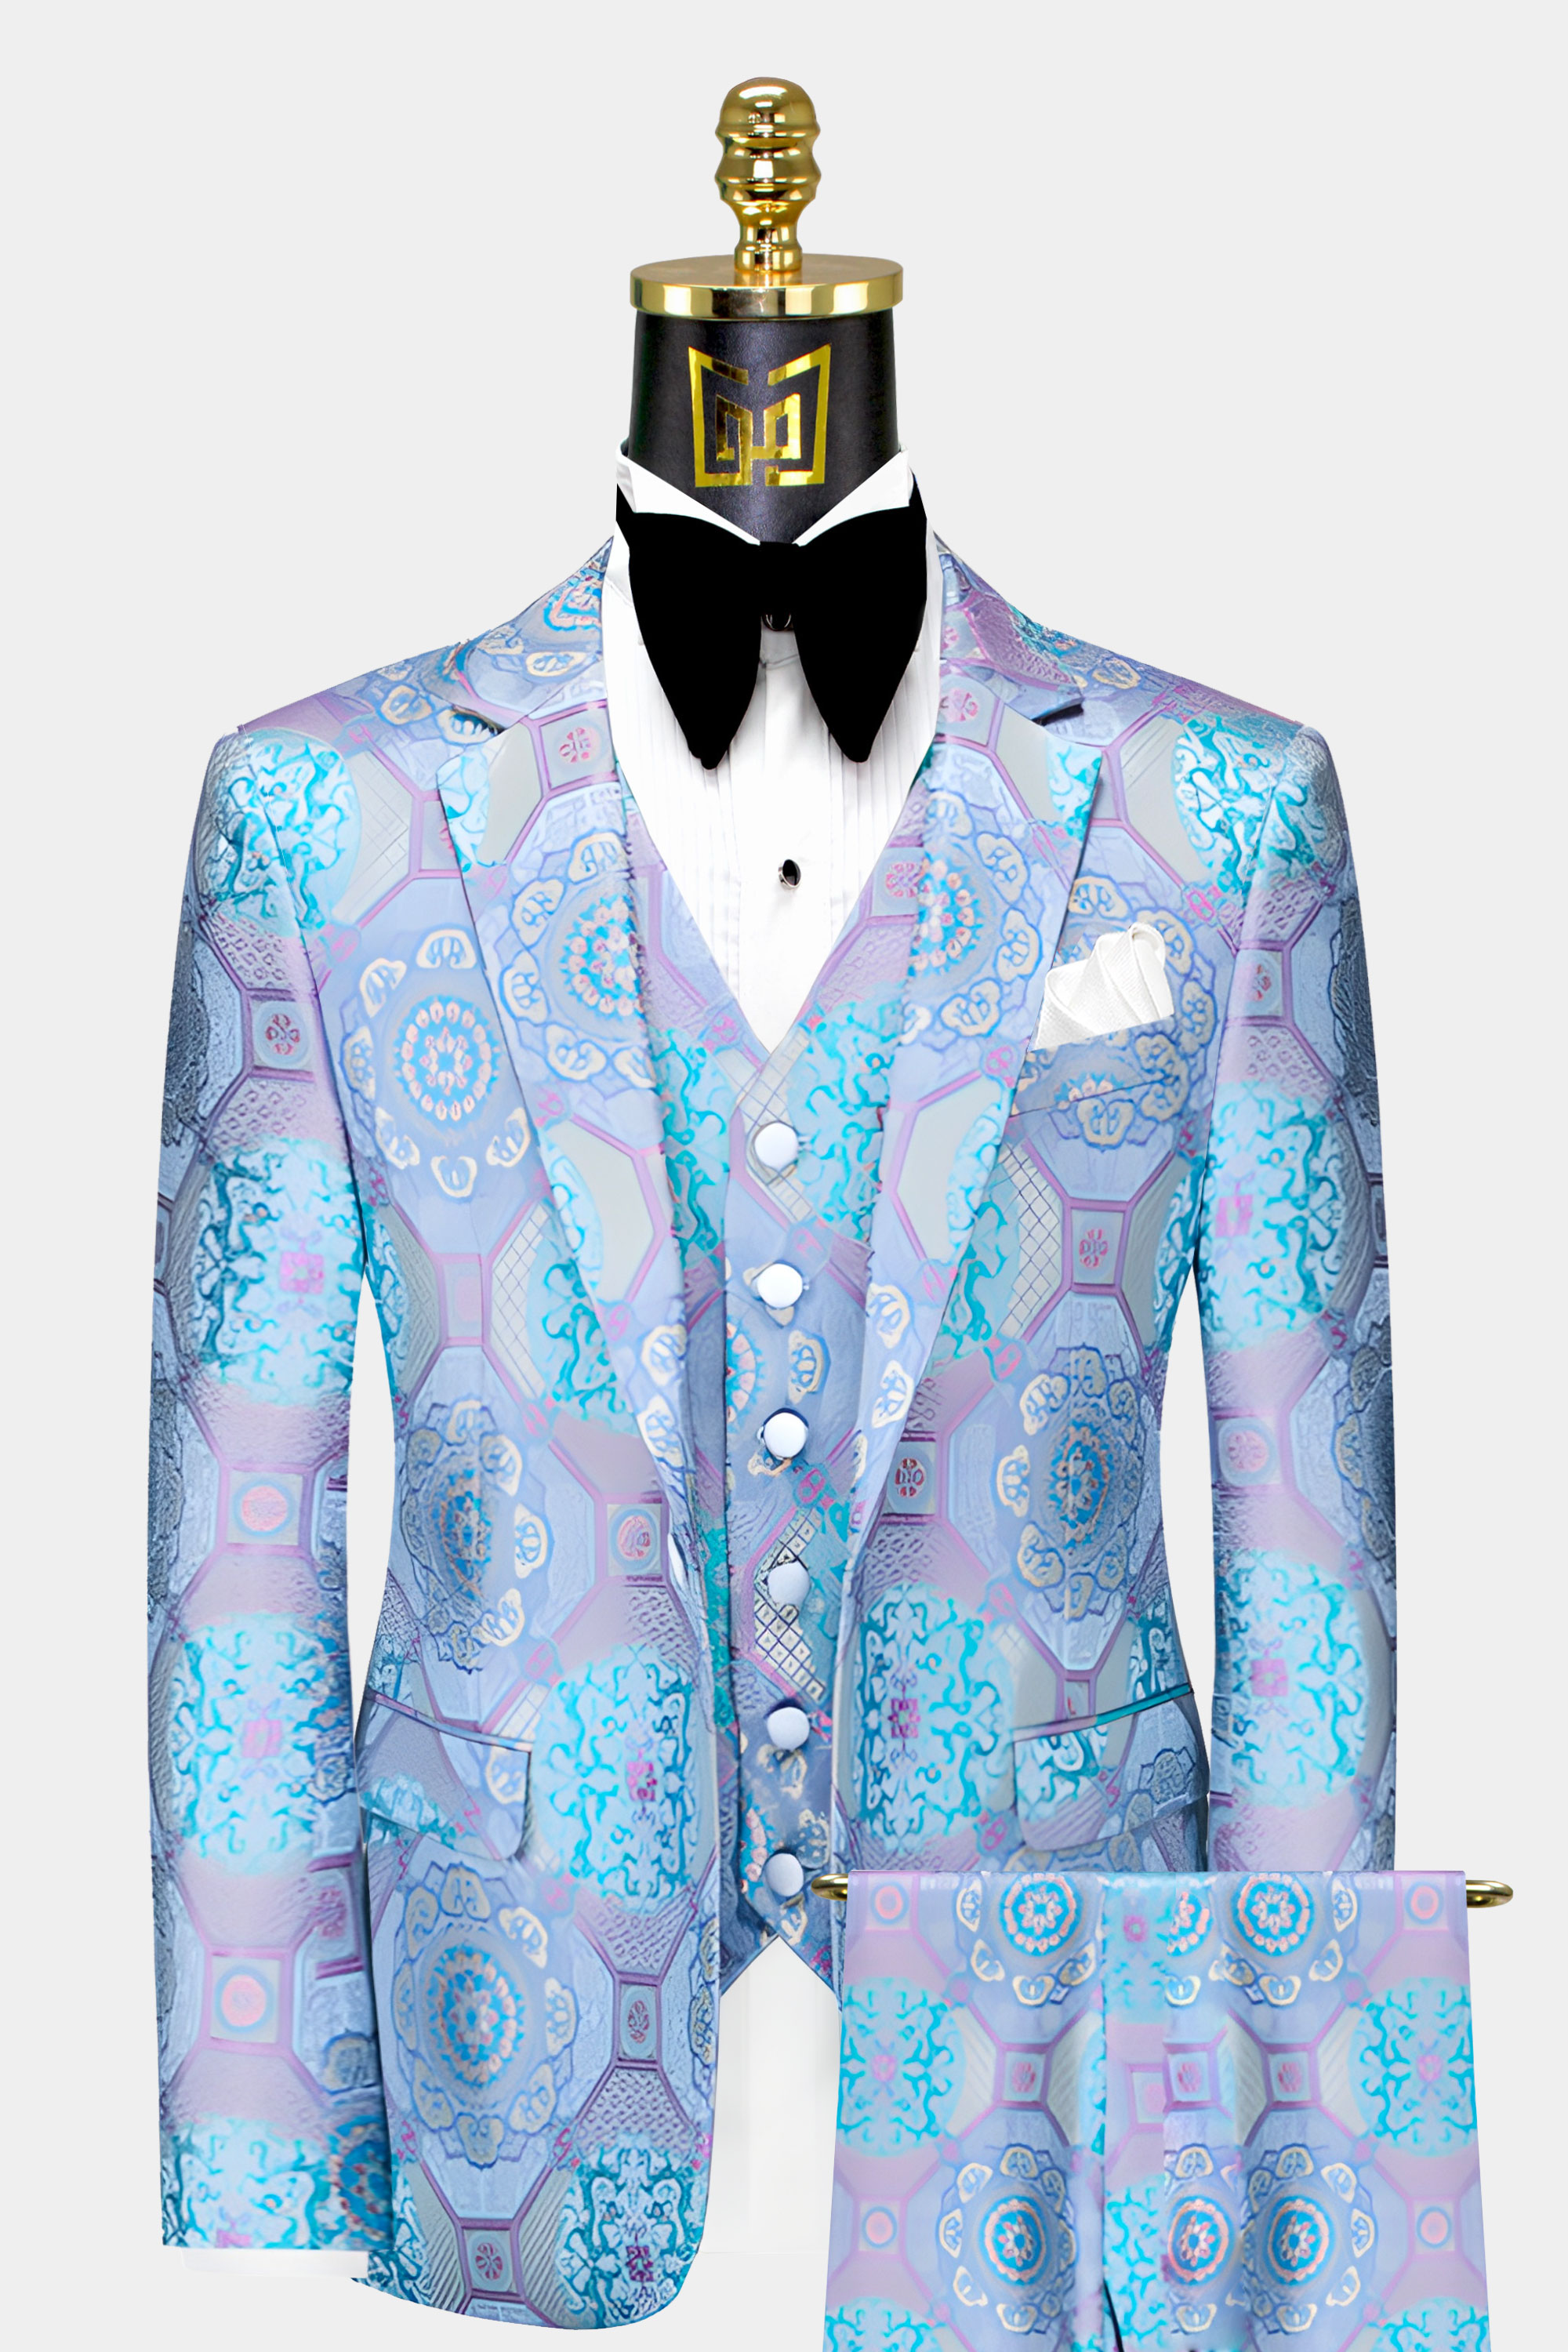 Purple-and-Turquoise-Tuxedo-Suit-Groom-Wedding-Prom-Suit-For-Men-from-Gentlemansguru.com